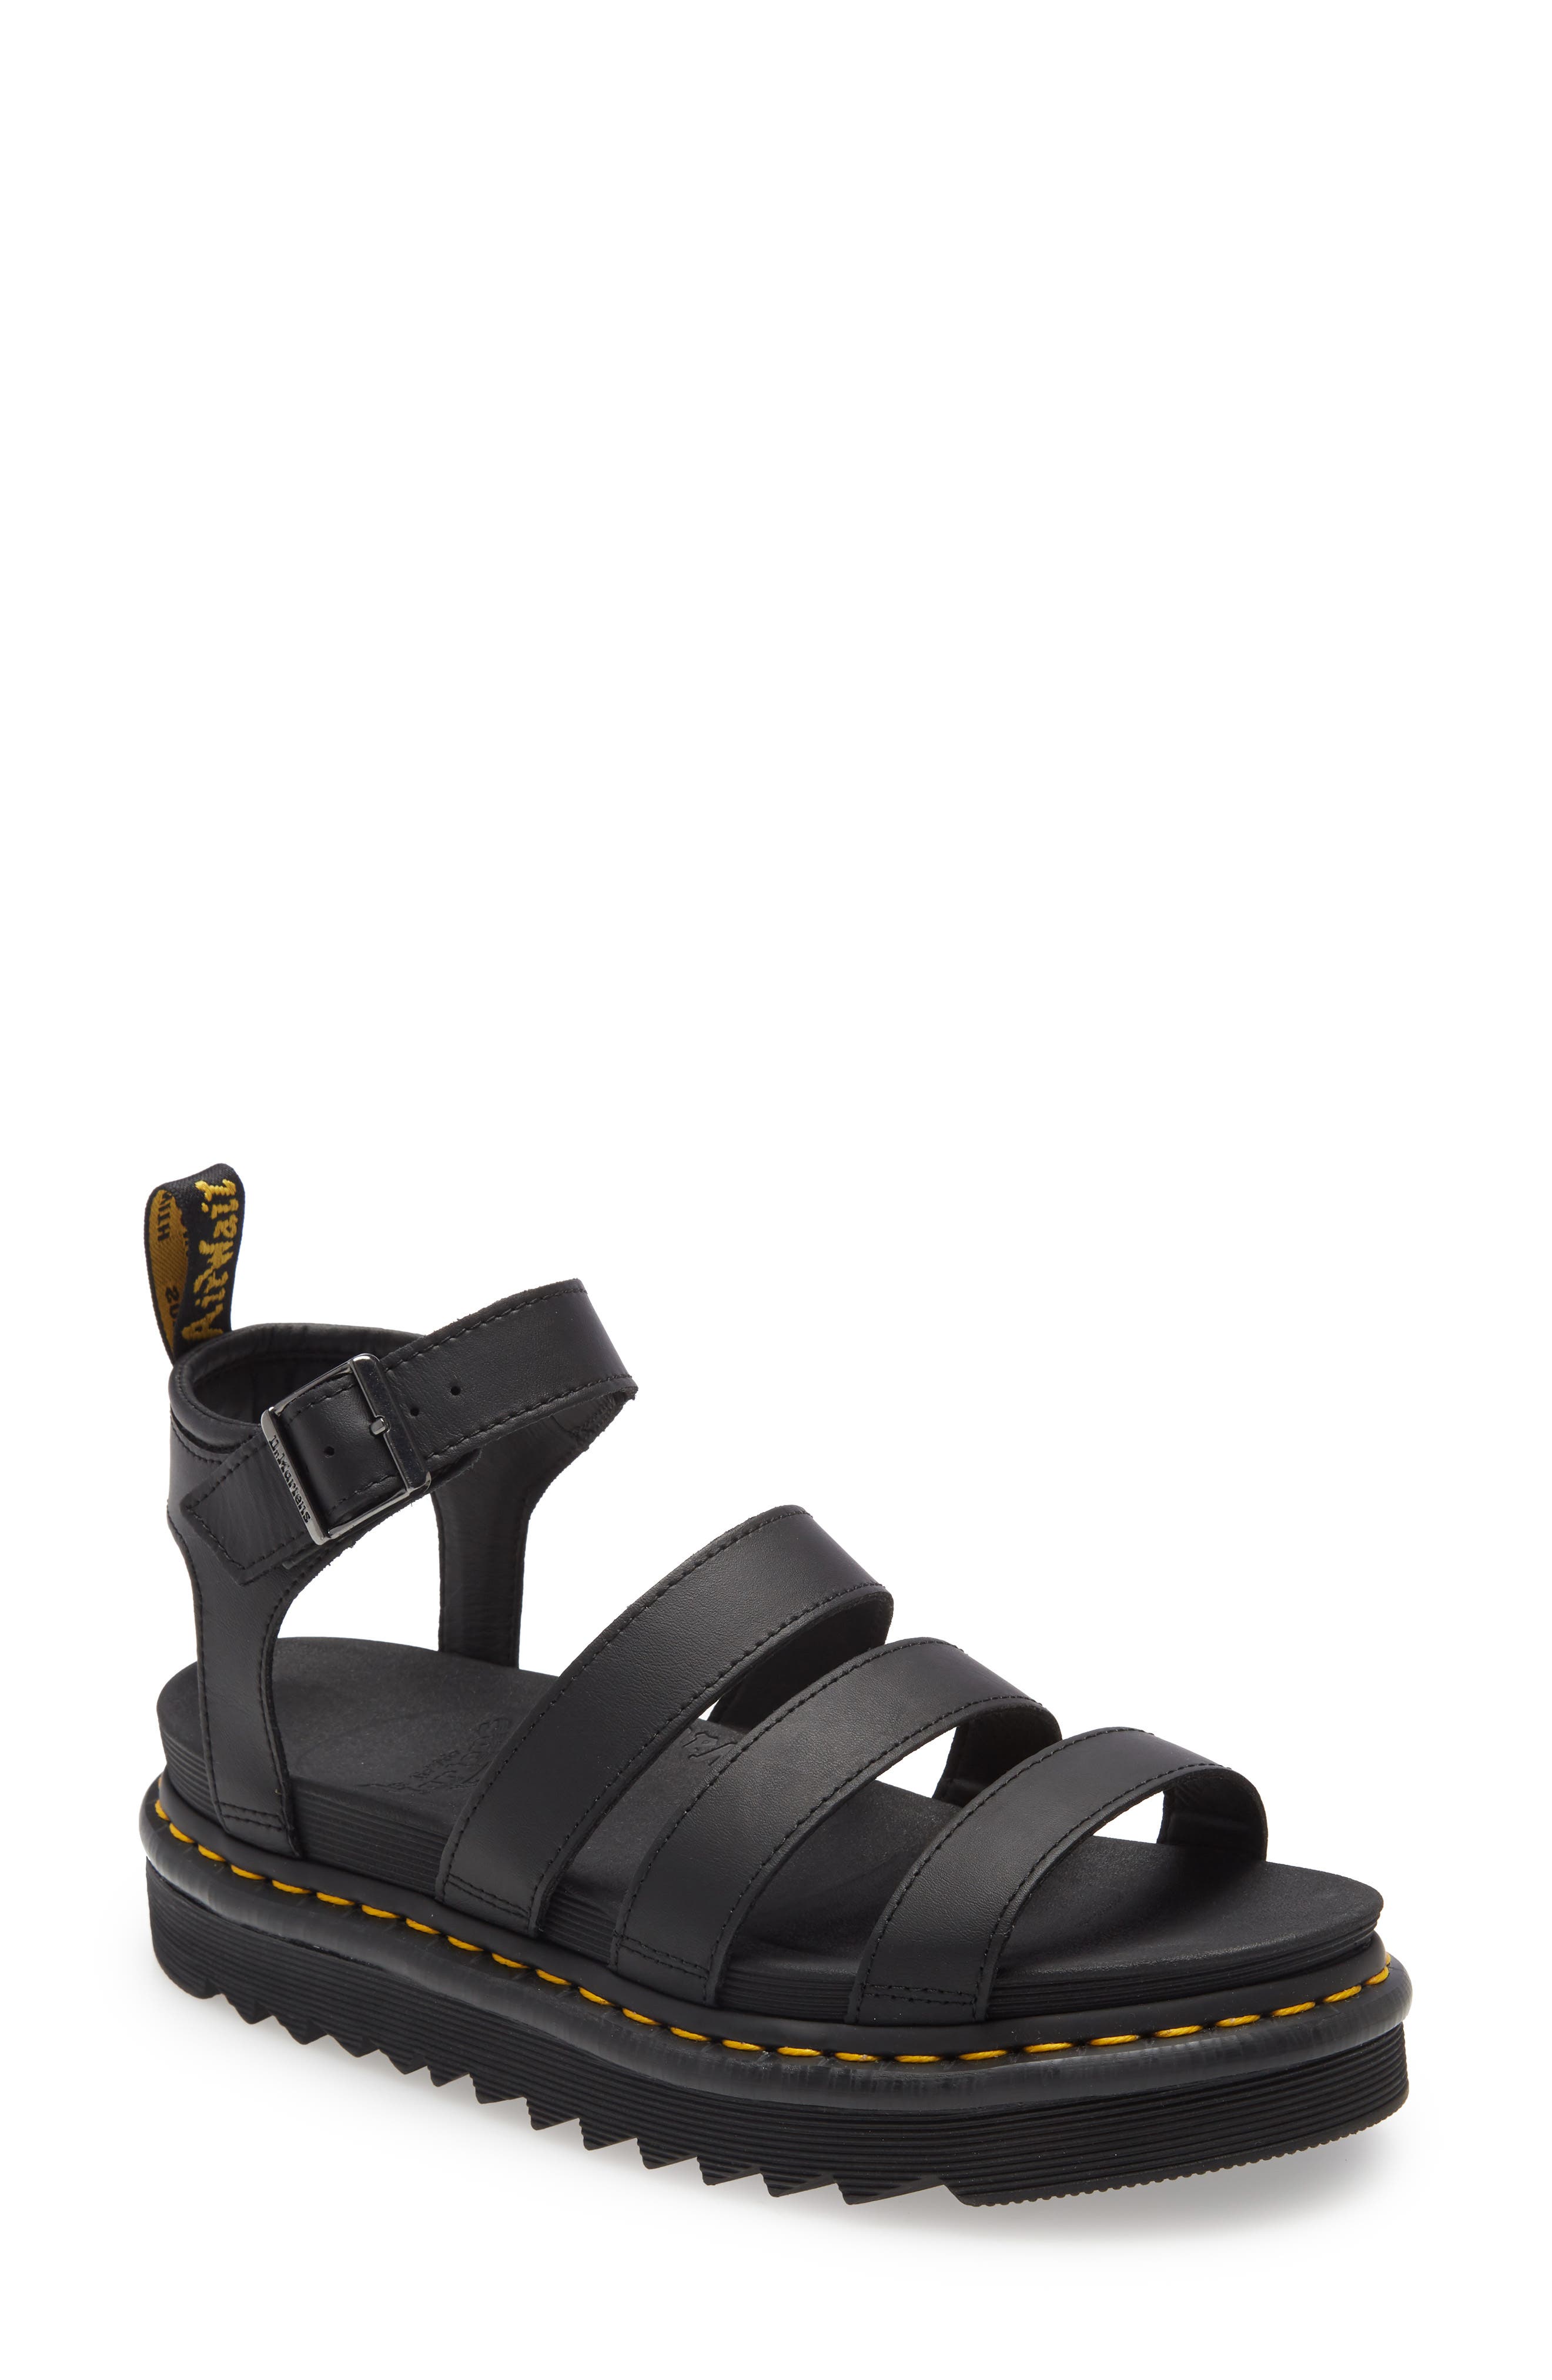 black platform sandals nordstrom